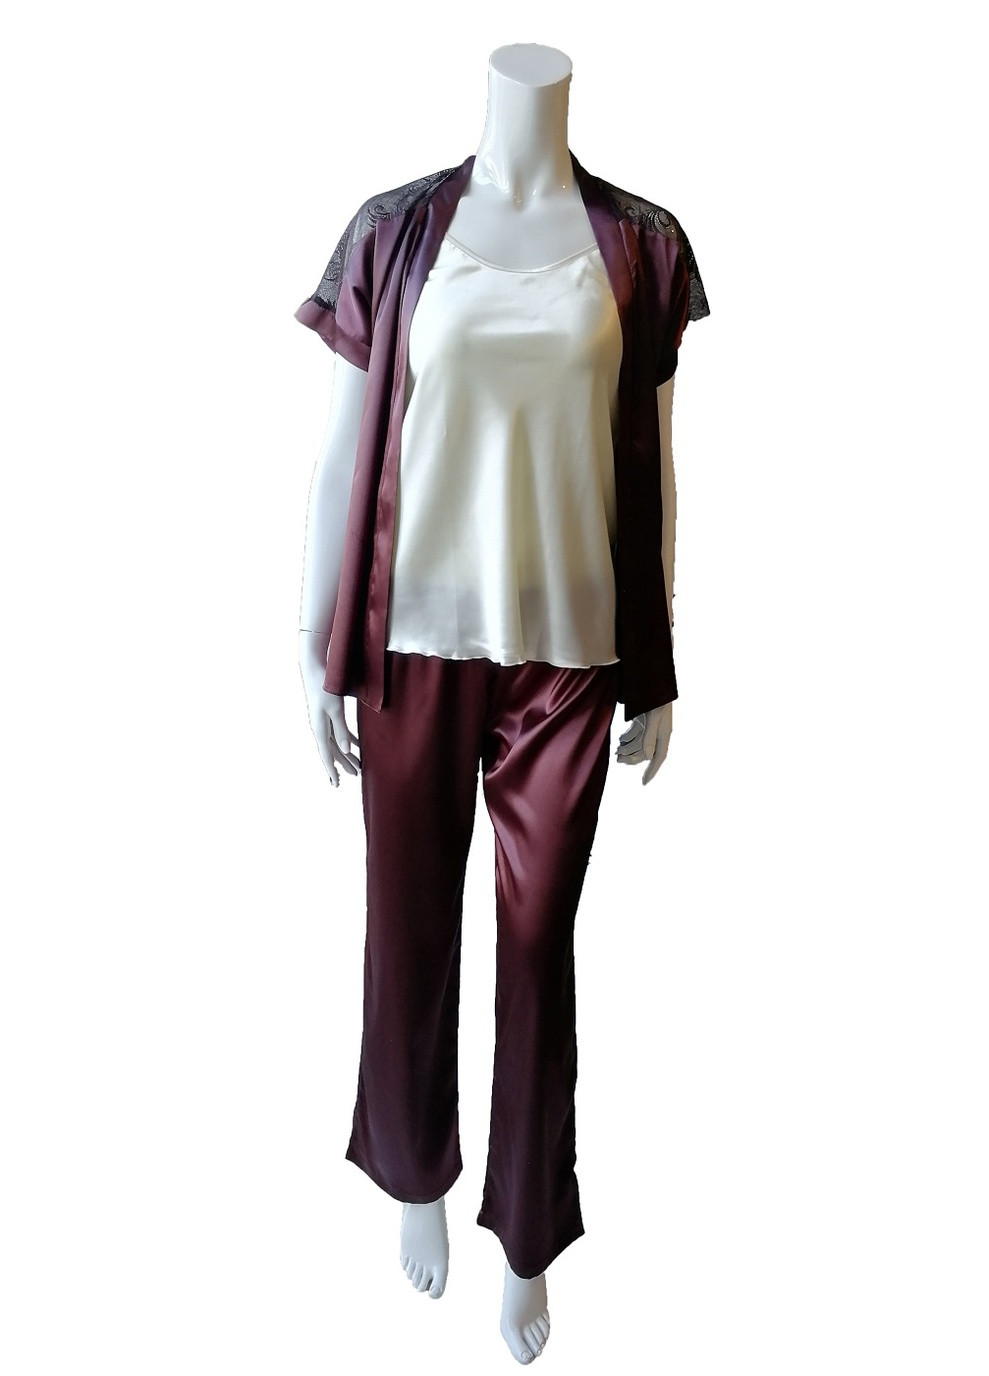 Коричневая комплект штаны+майка+халат коричневый m кофта + футболка + брюки JULIA